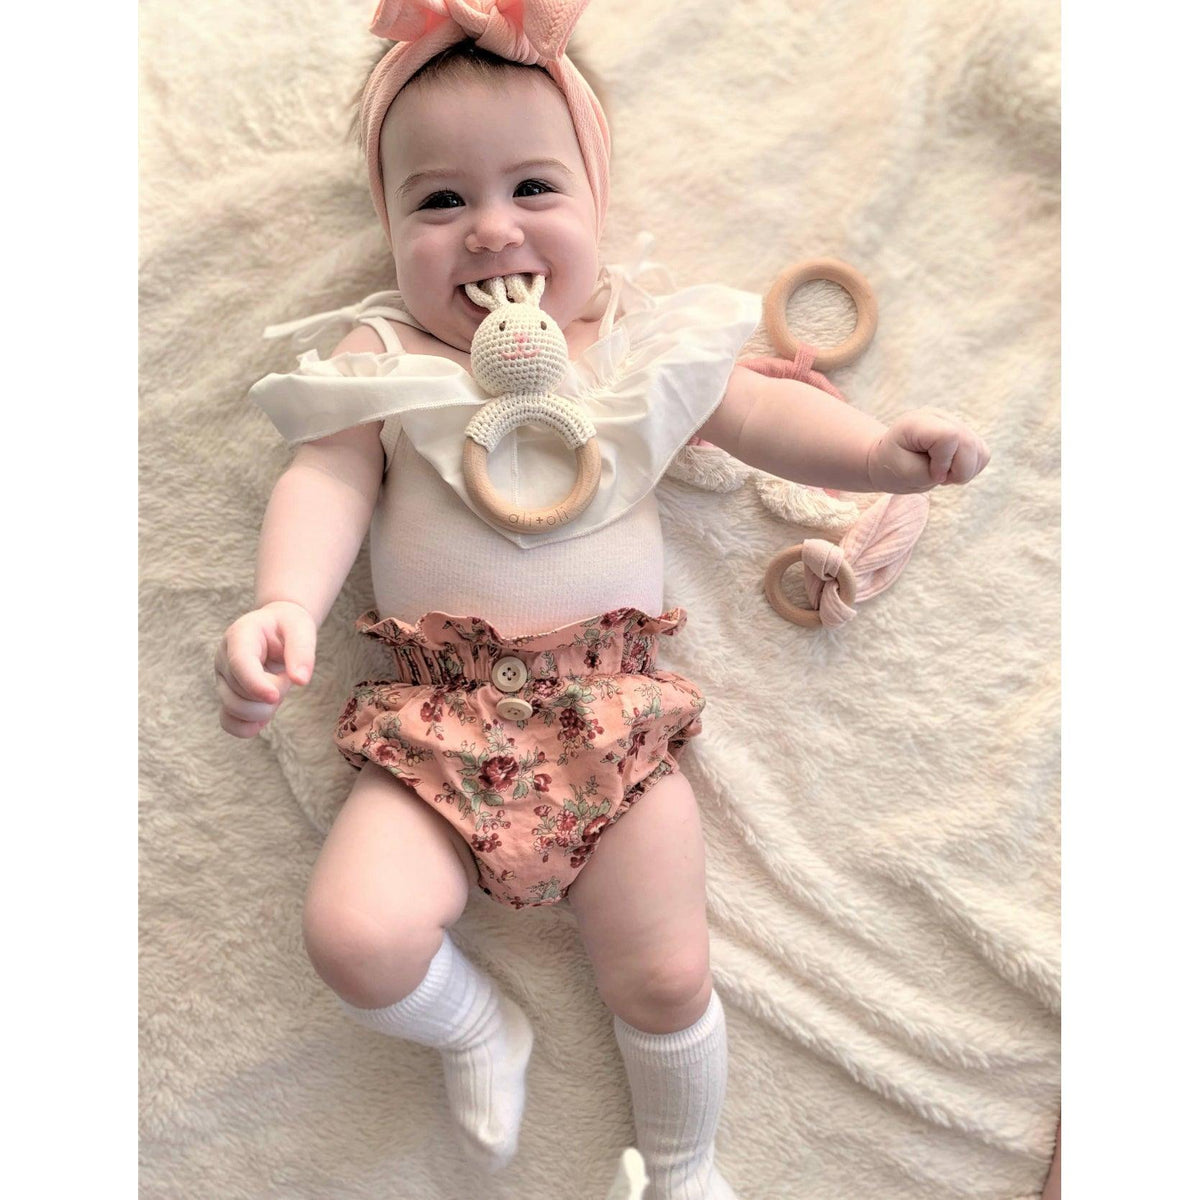 Ali & Oli | Baby Bunny Crochet Teething Toy | Rattle Wood Ring - becauseofadi